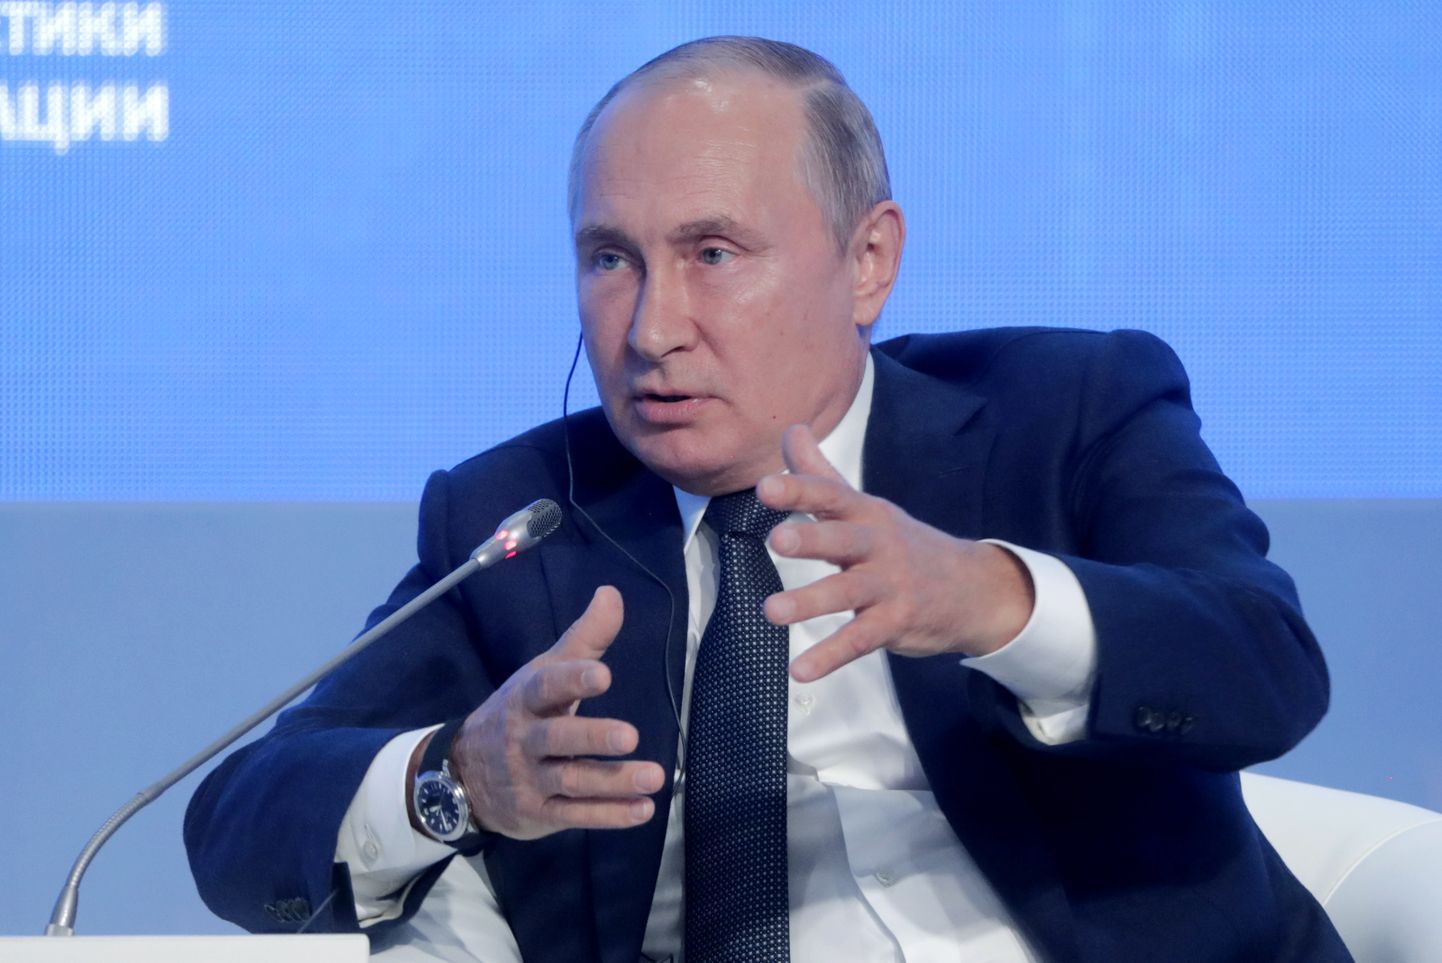 Venemaa president Vladimir Putin Moskvas energiafoorumil.